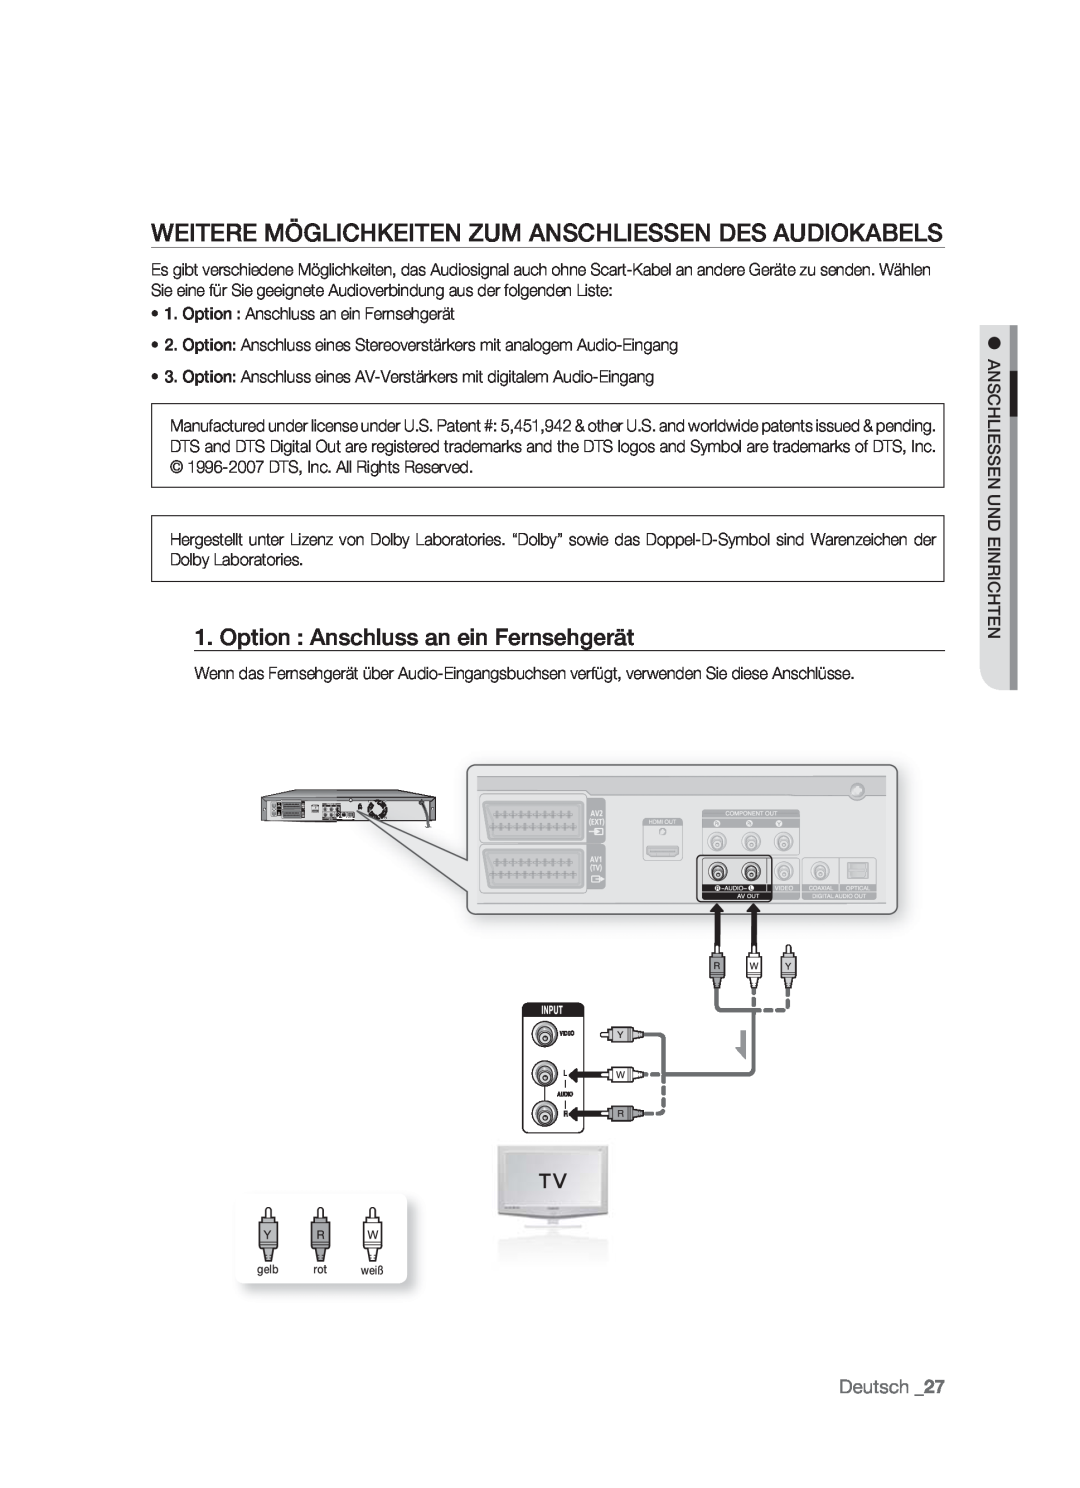 Samsung DVD-HR773/AUS manual Weitere Möglichkeiten Zum Anschliessen Des Audiokabels, Option Anschluss an ein Fernsehgerät 